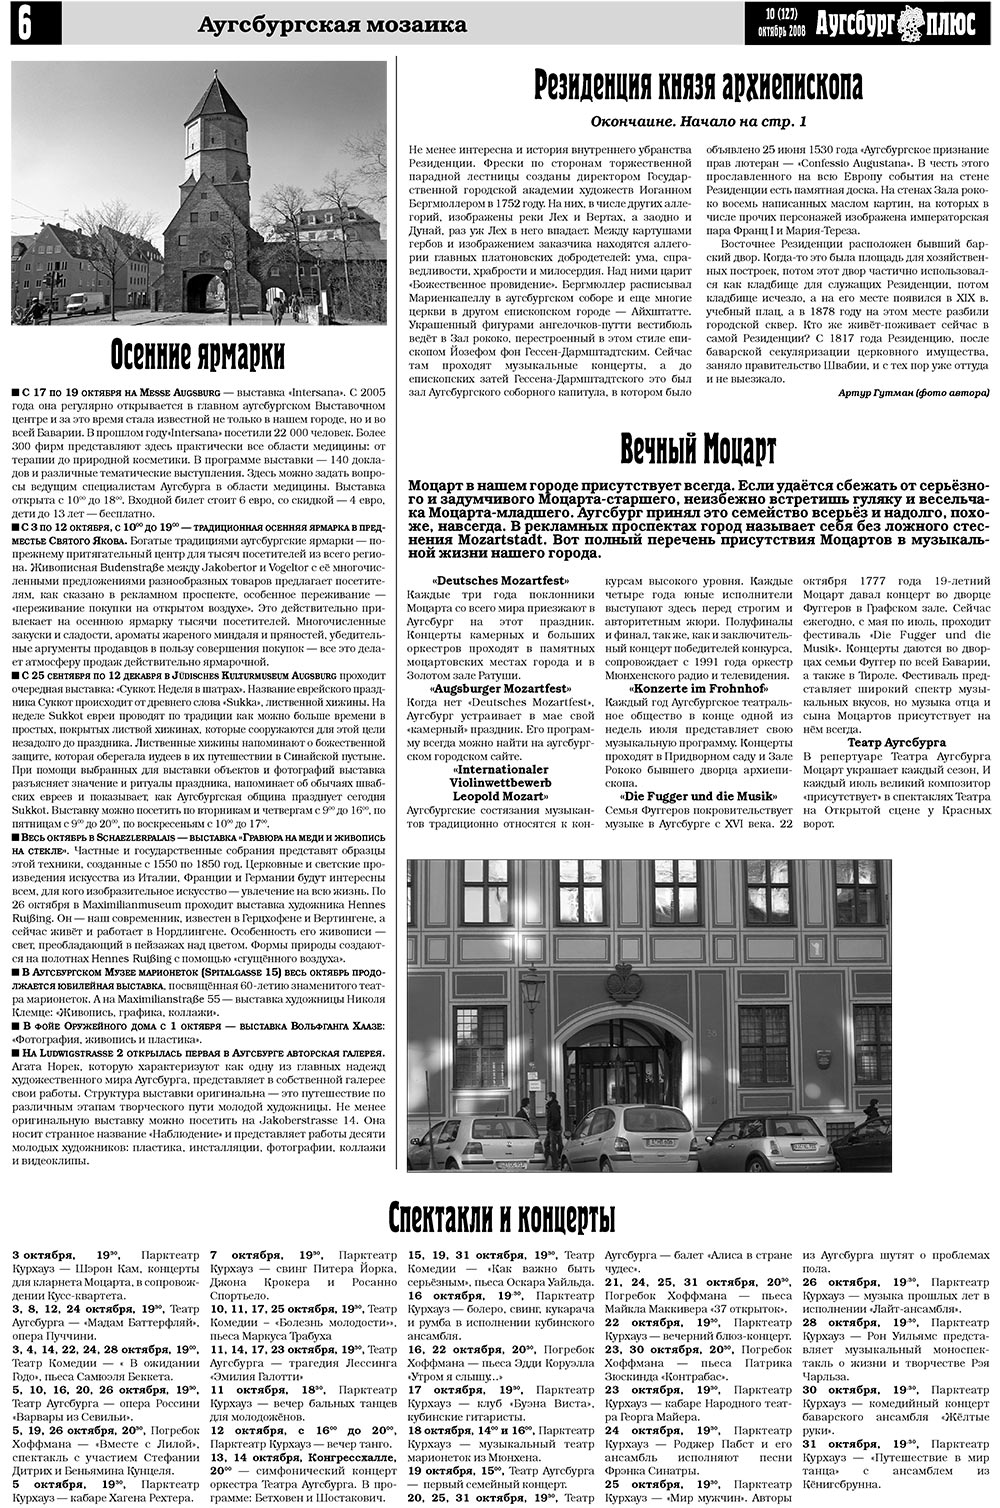 Германия плюс, газета. 2008 №10 стр.8